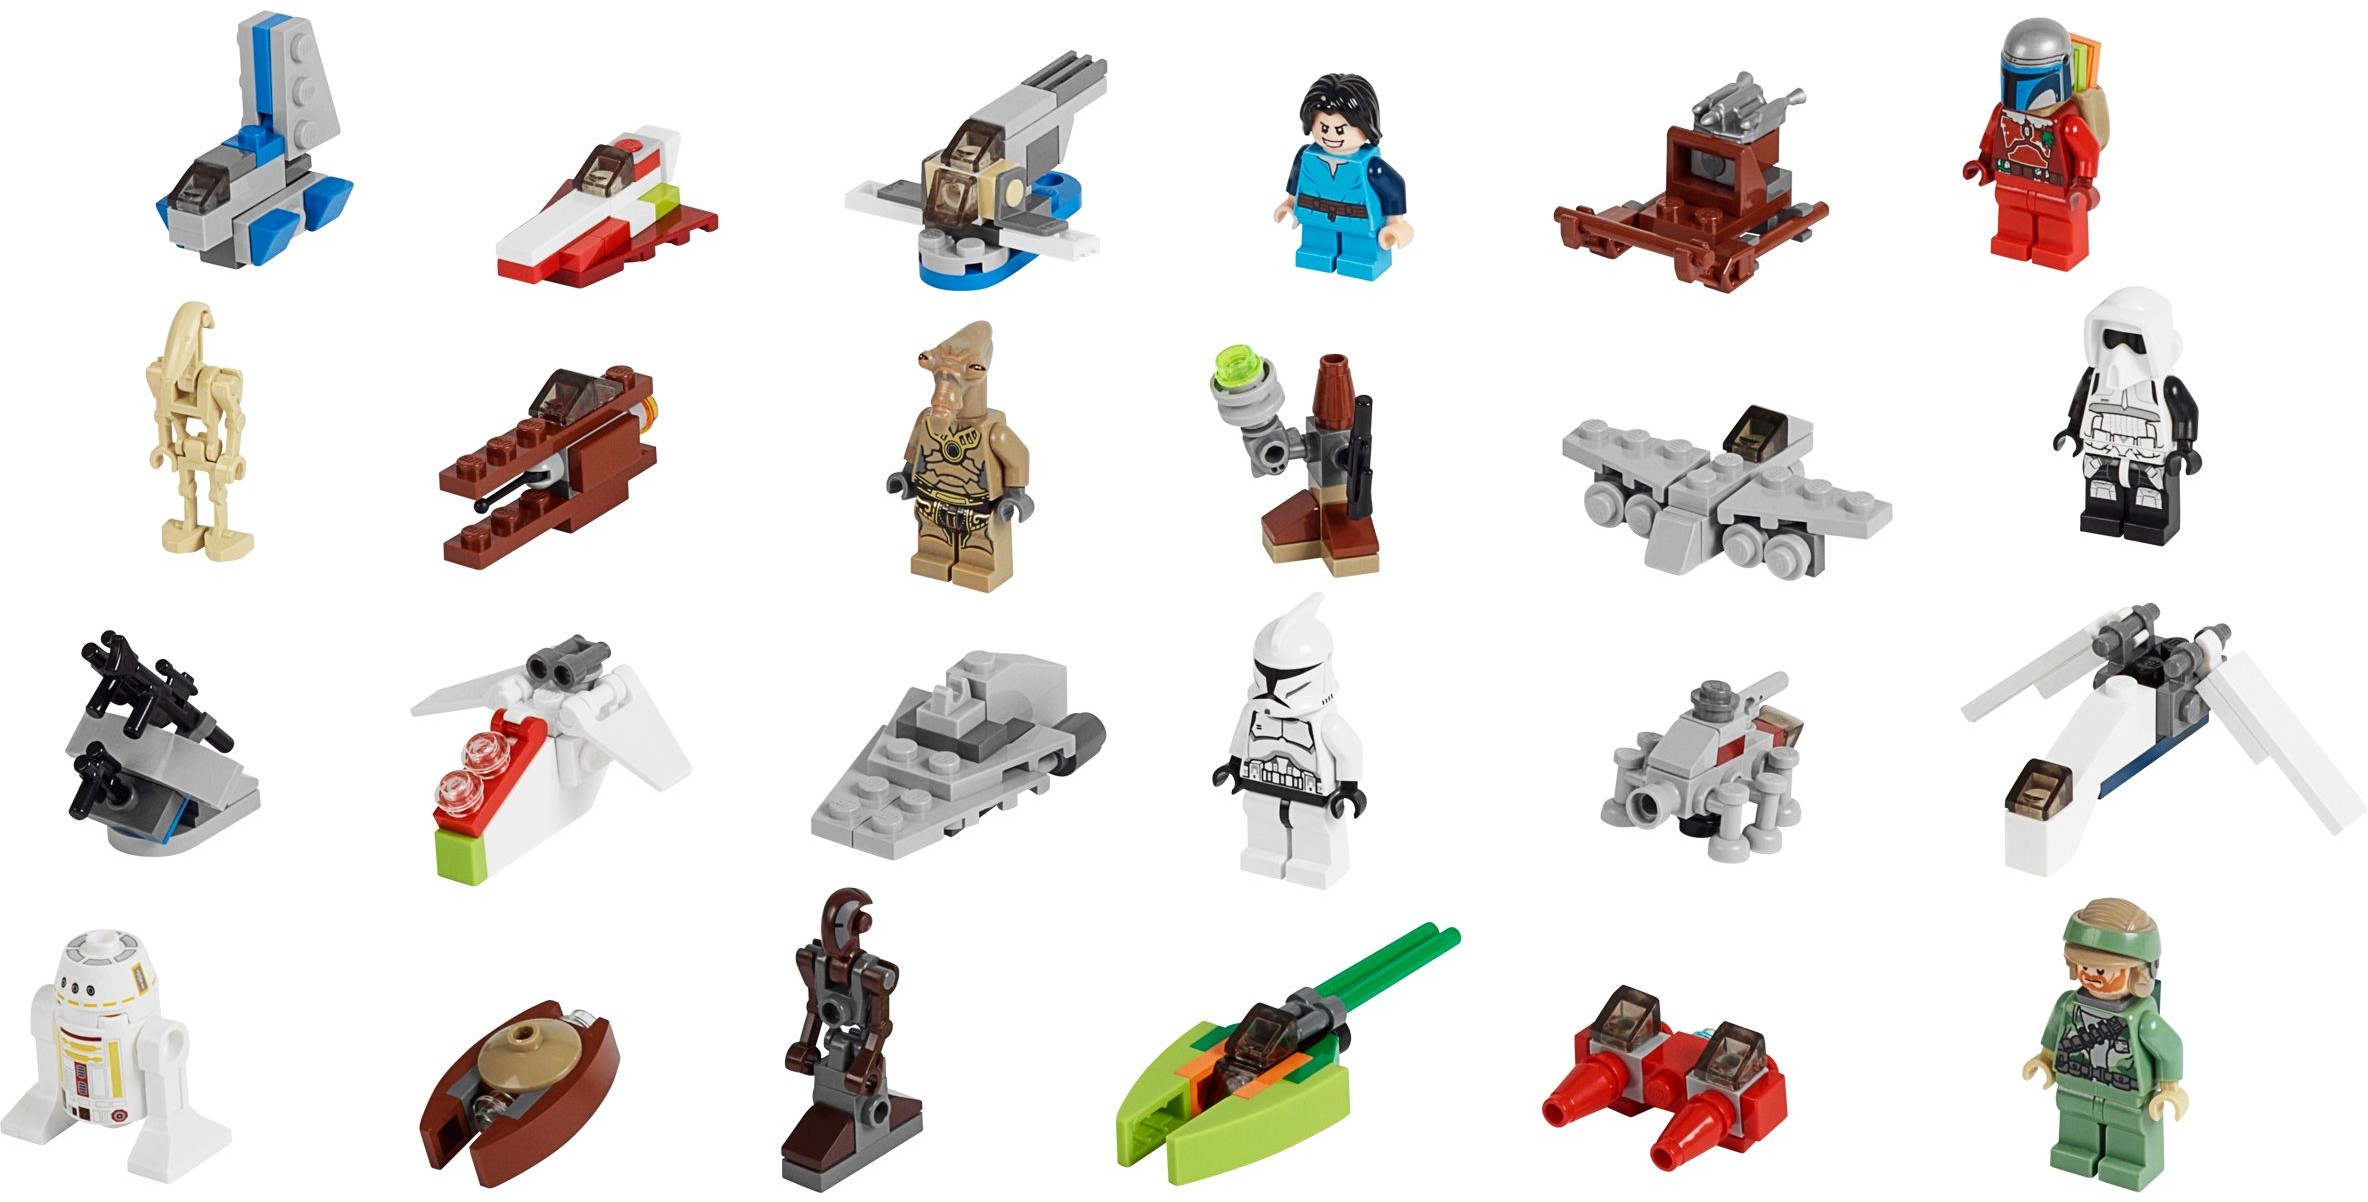 75023 Lego Star Wars Advent Calendar U041b U0435 U0433